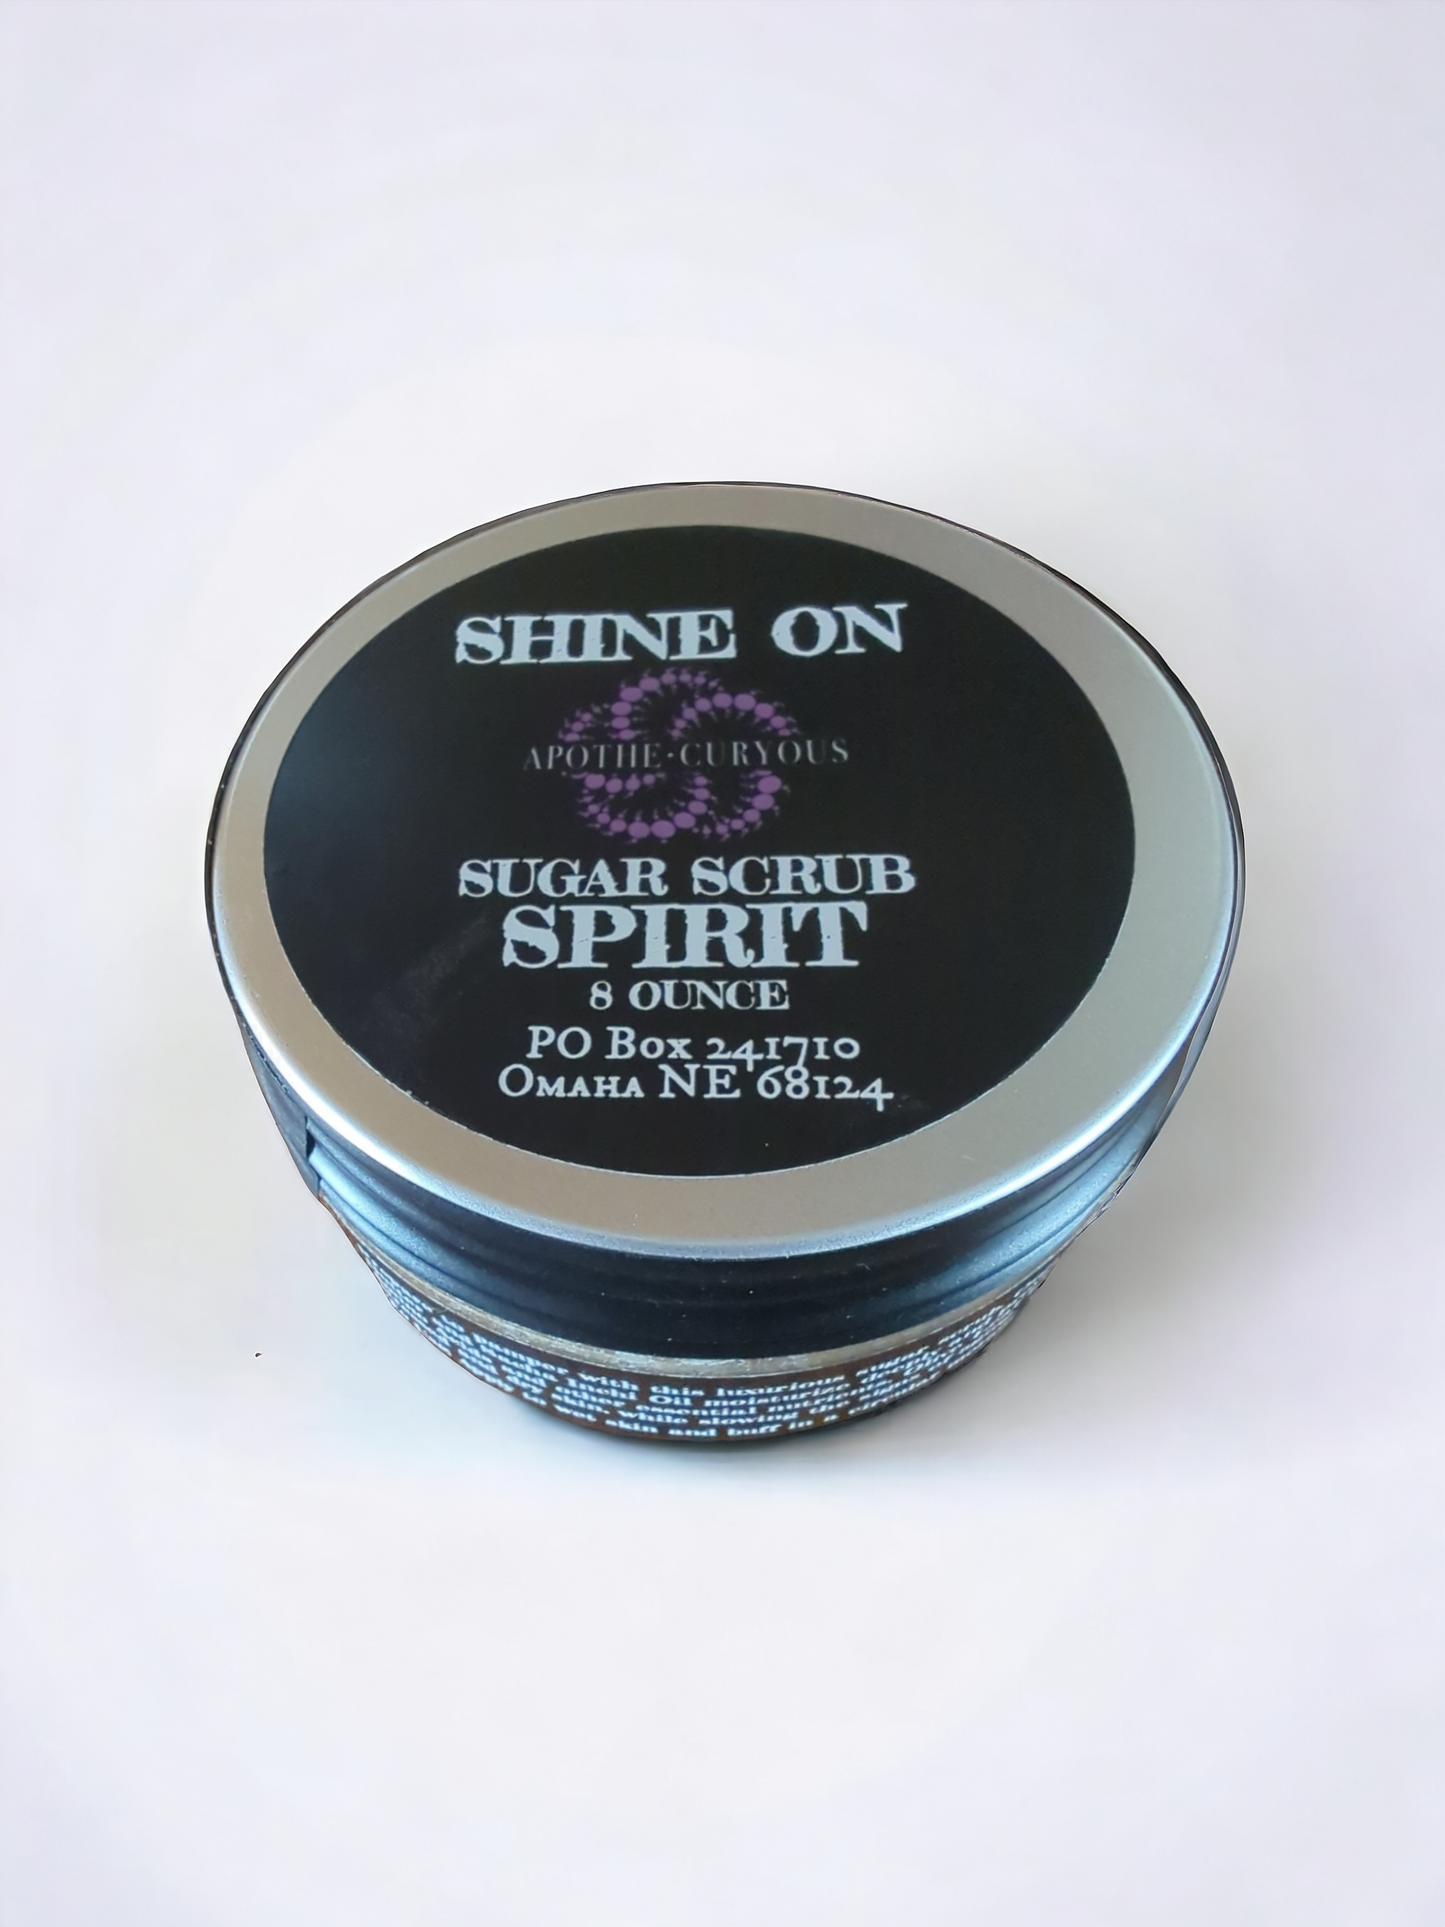 Shine On sugar scrub Spirit scent, Apothecuryous